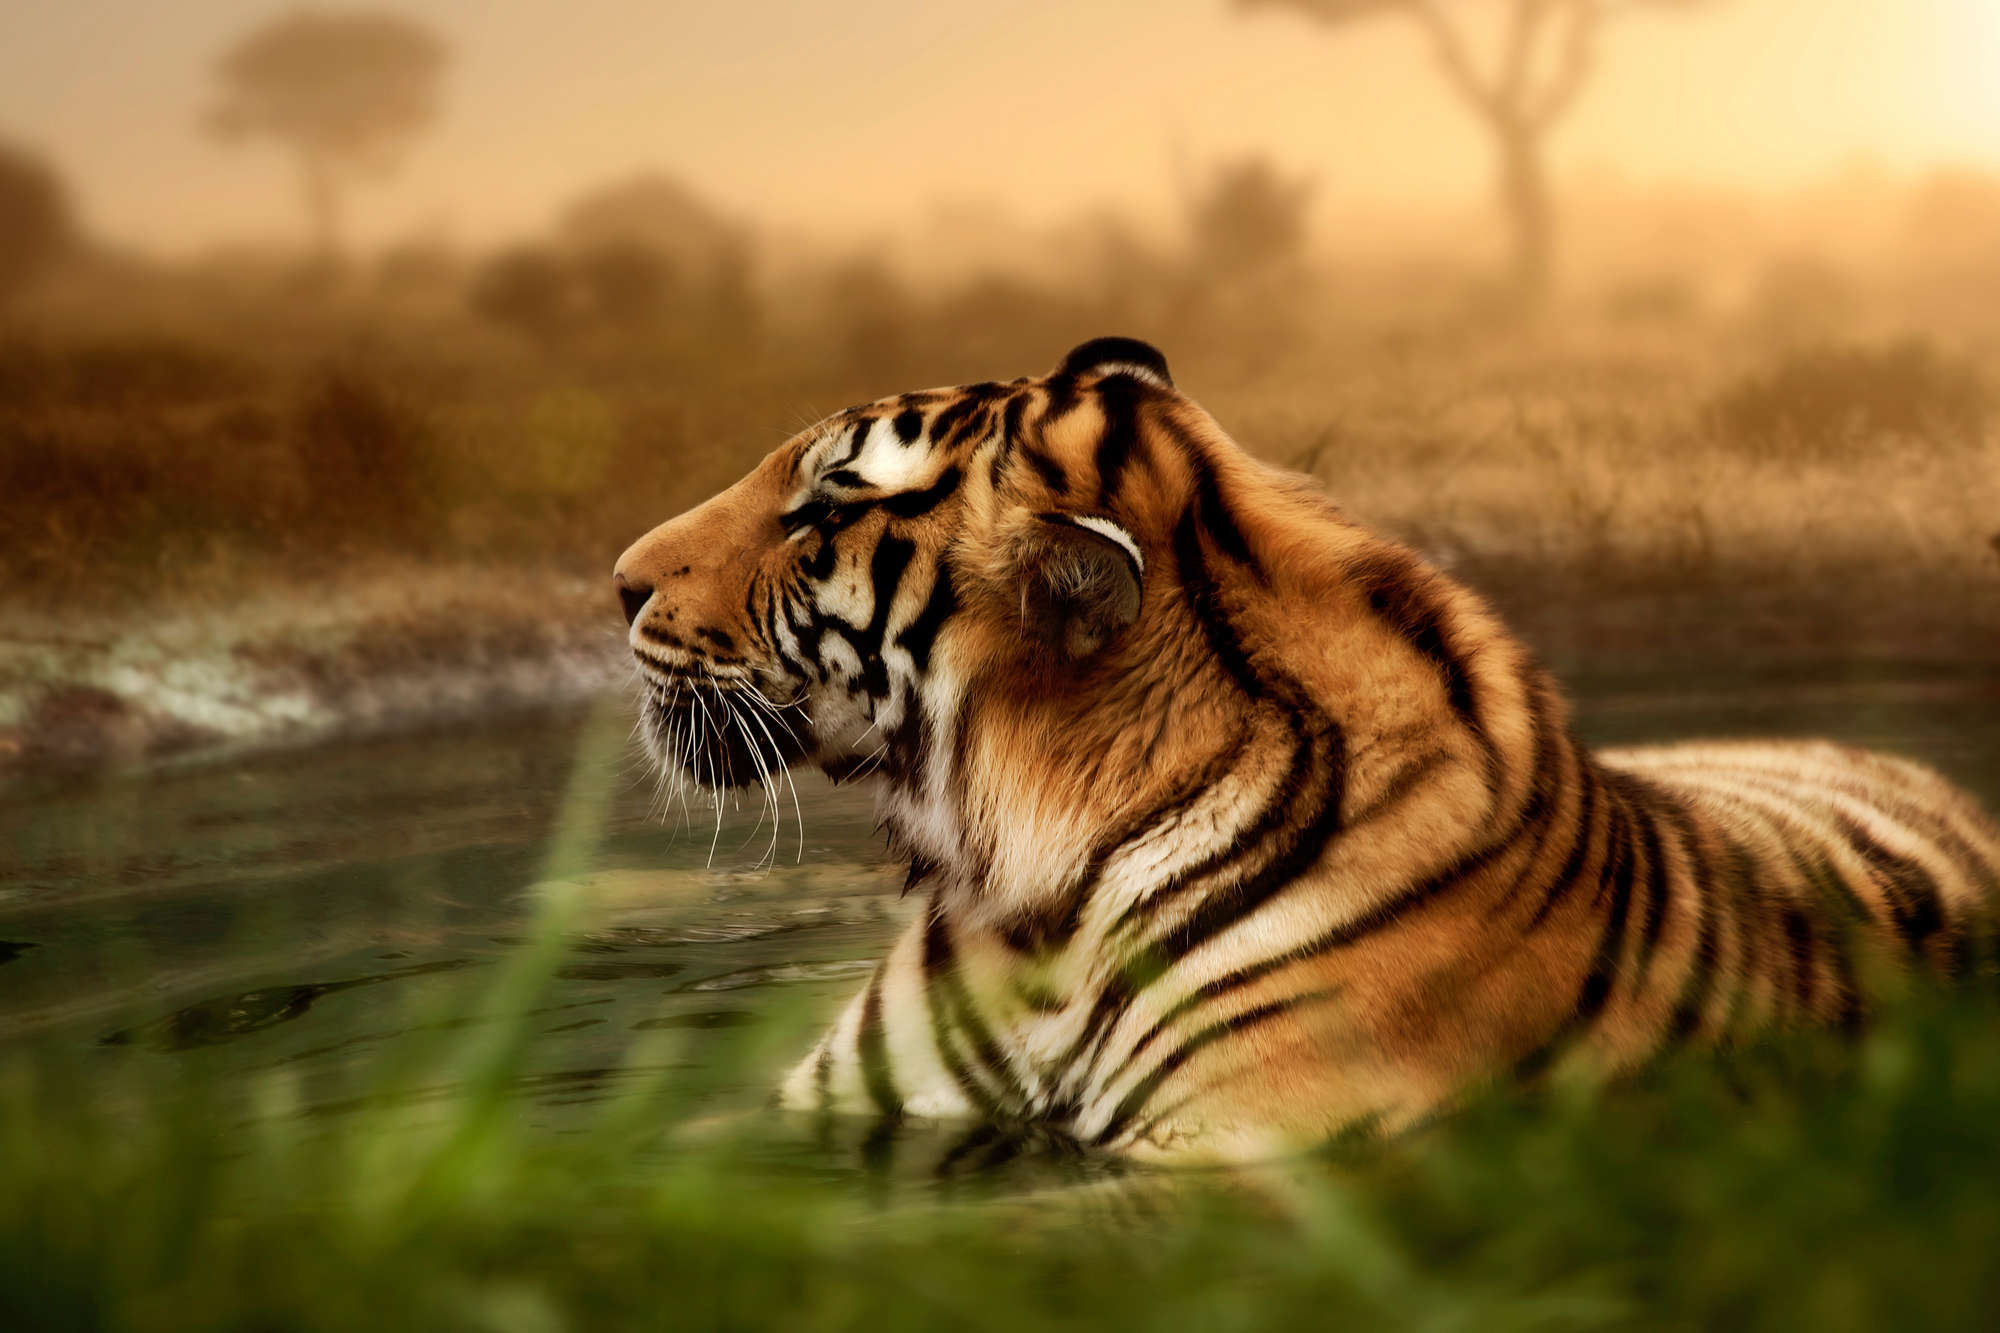             Fotomurali di tigri in libertà su vello liscio madreperlato
        